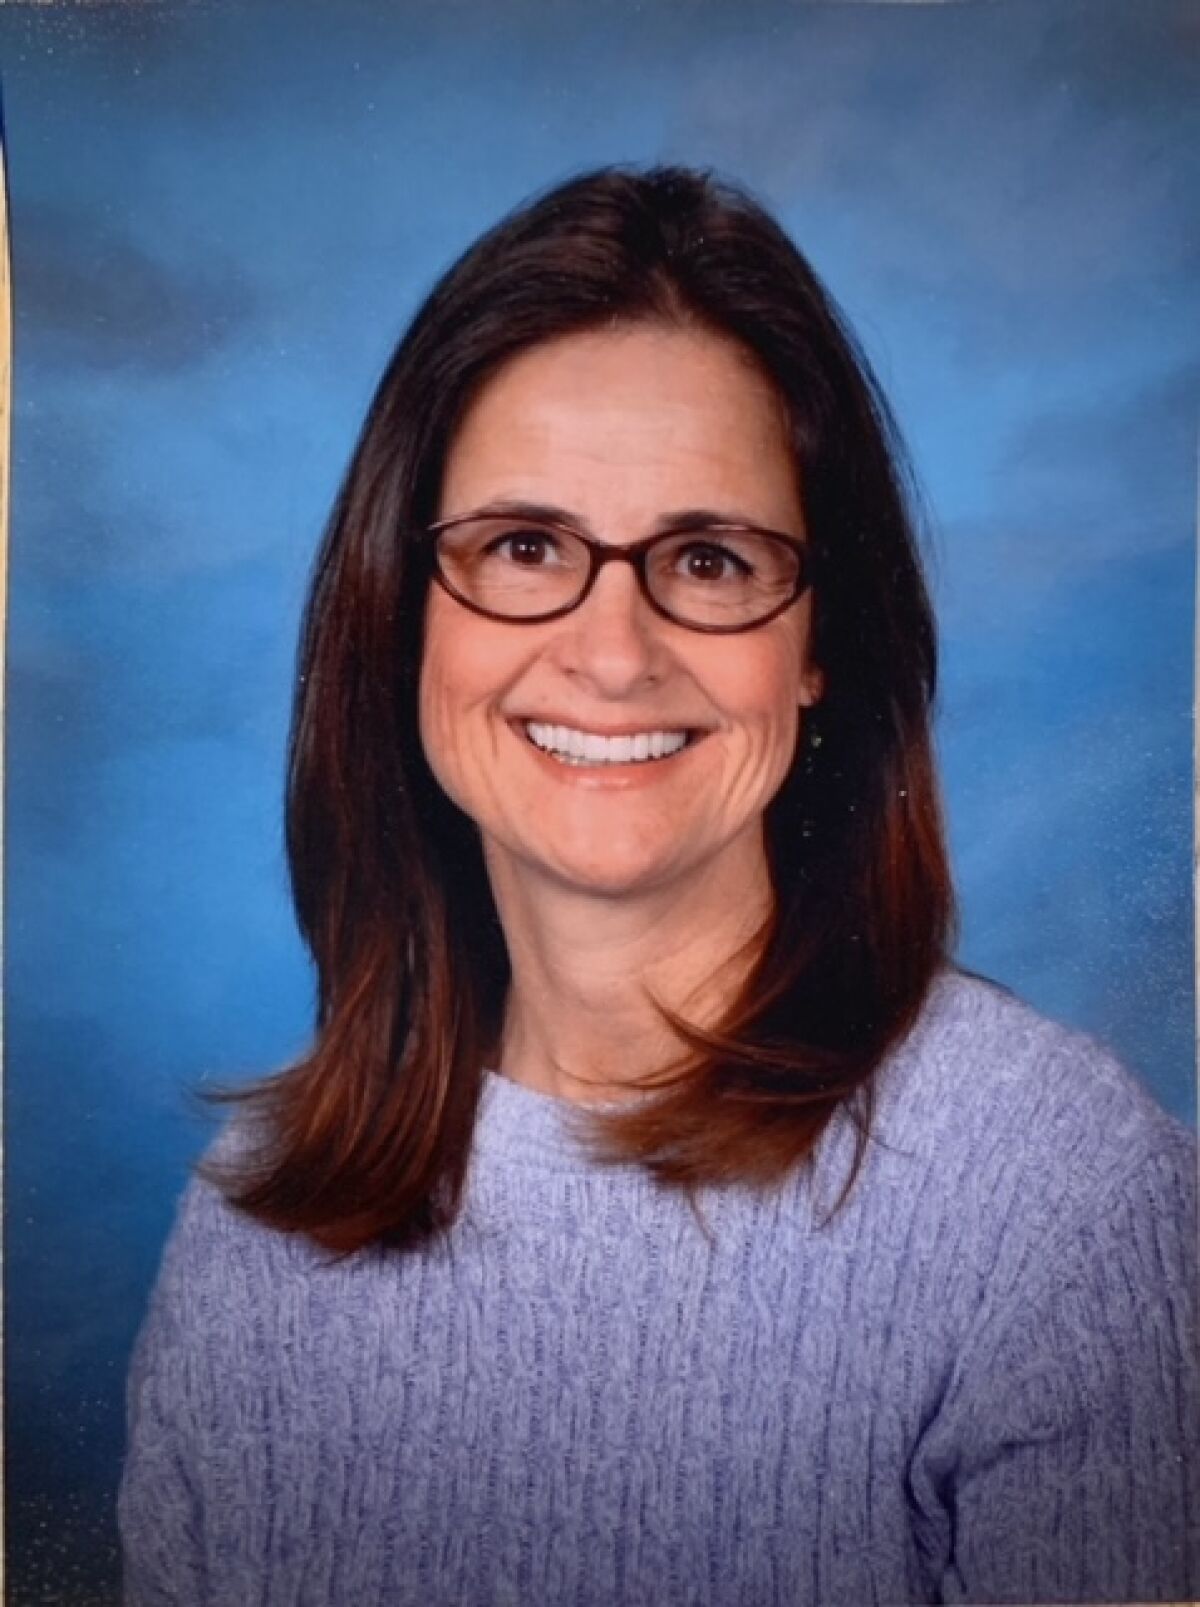 Wendy Gillespie is leaving Torrey Pines Elementary School after 30 years.